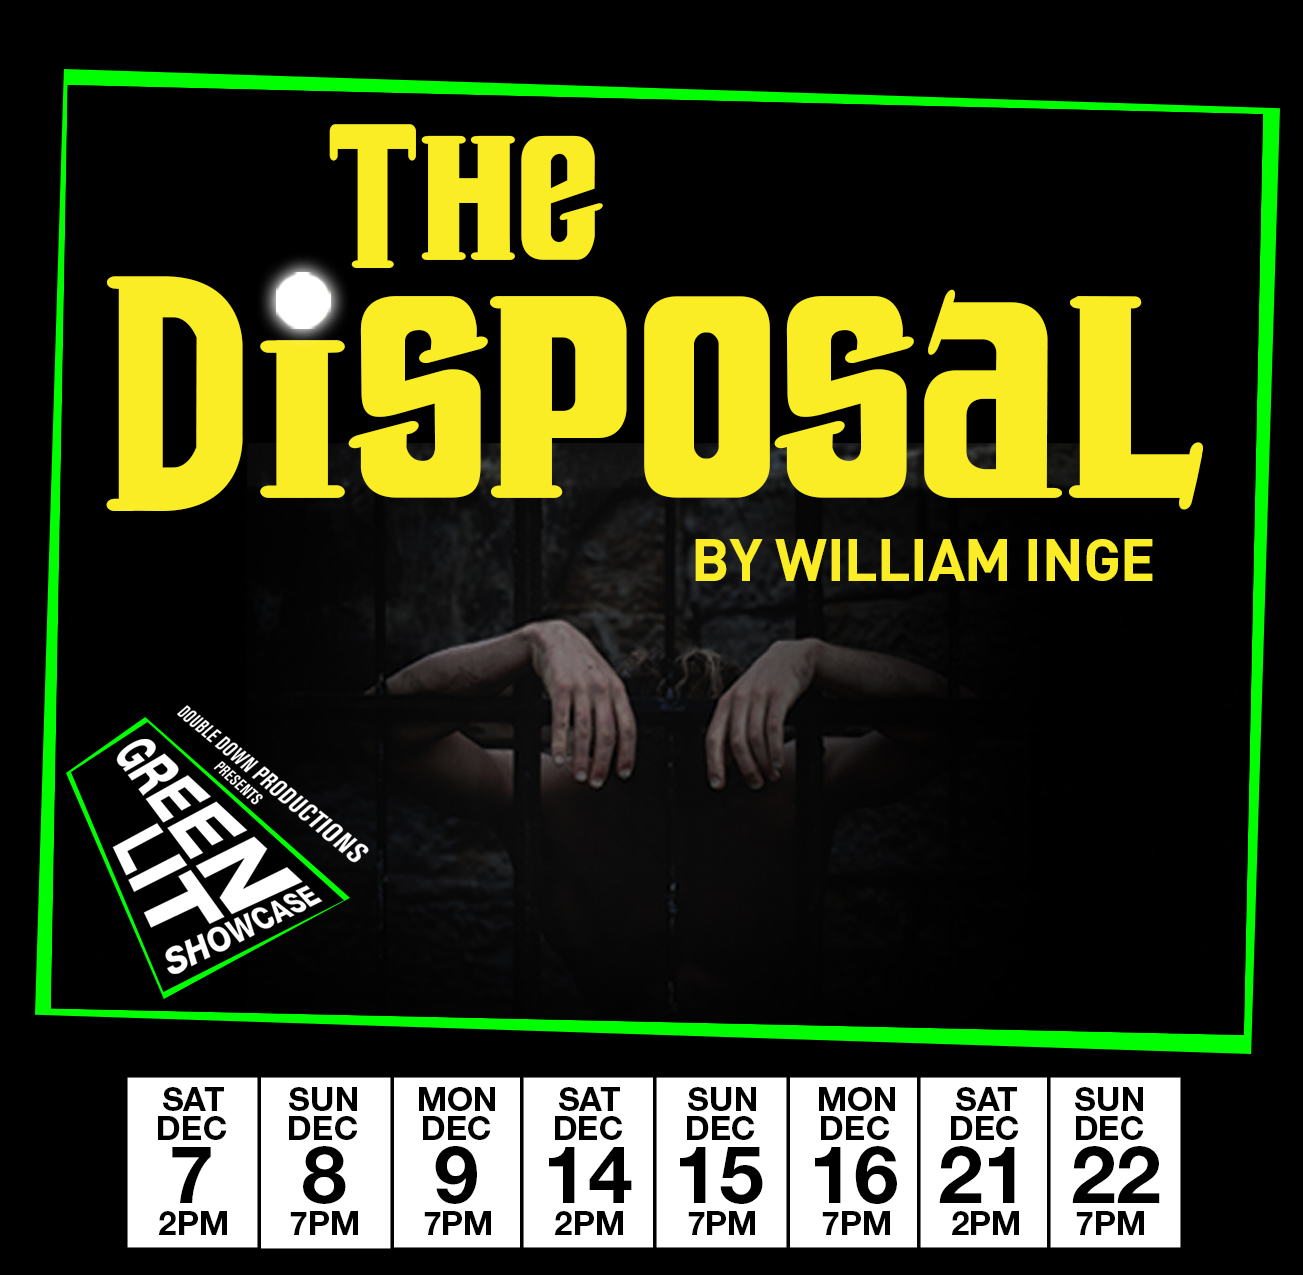 The Disposal - Mon Dec 9th